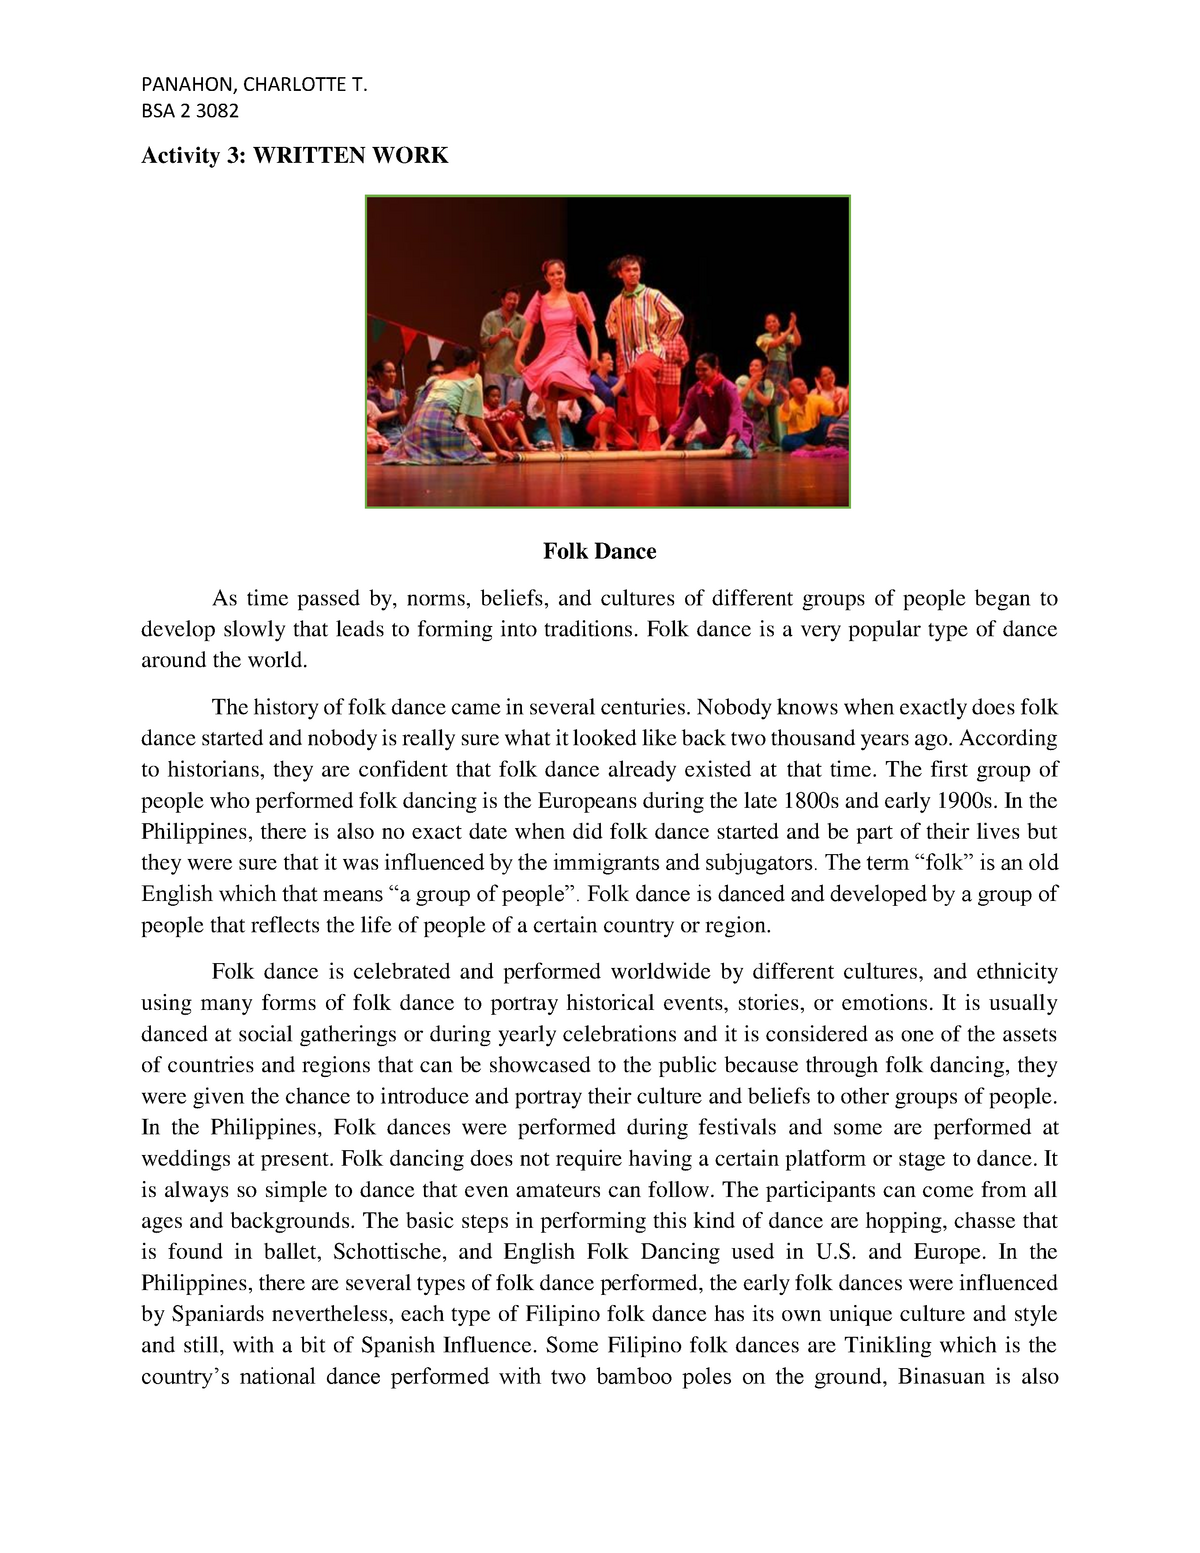 research paper about folk dances